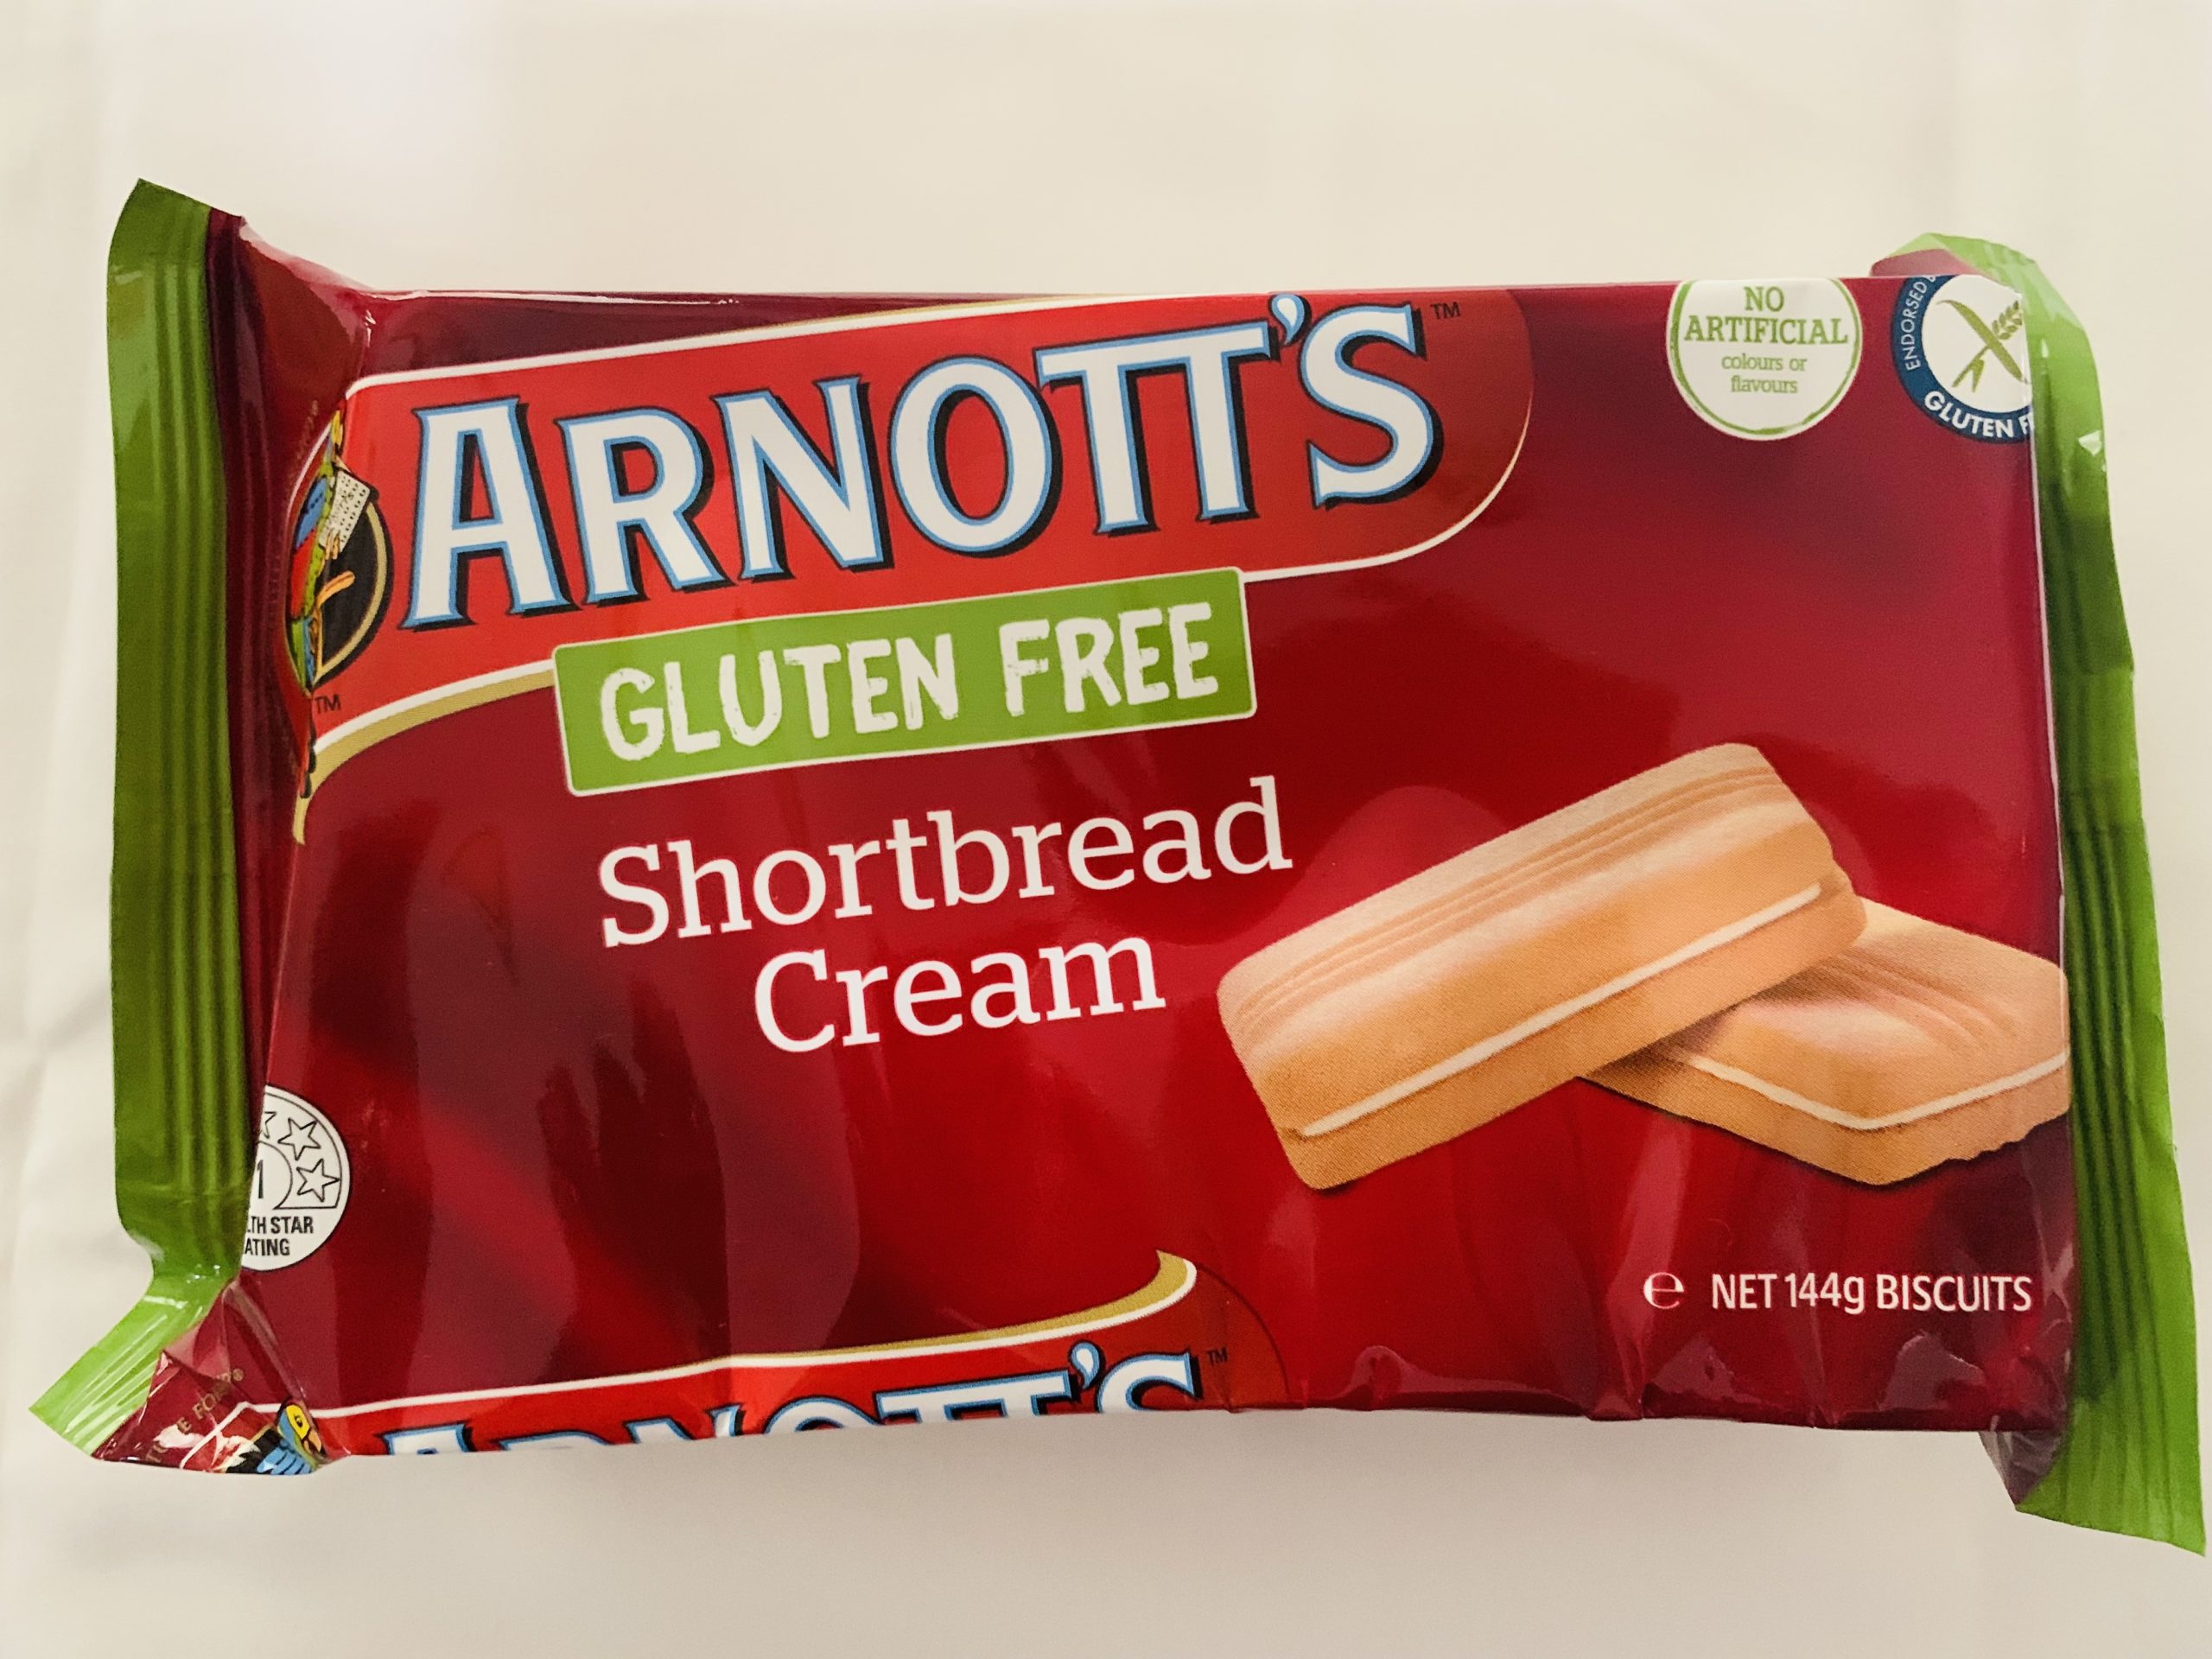 Arnotts Gluten Free Shortbread Creams 144g Gluten Free Products Of Australia 4582